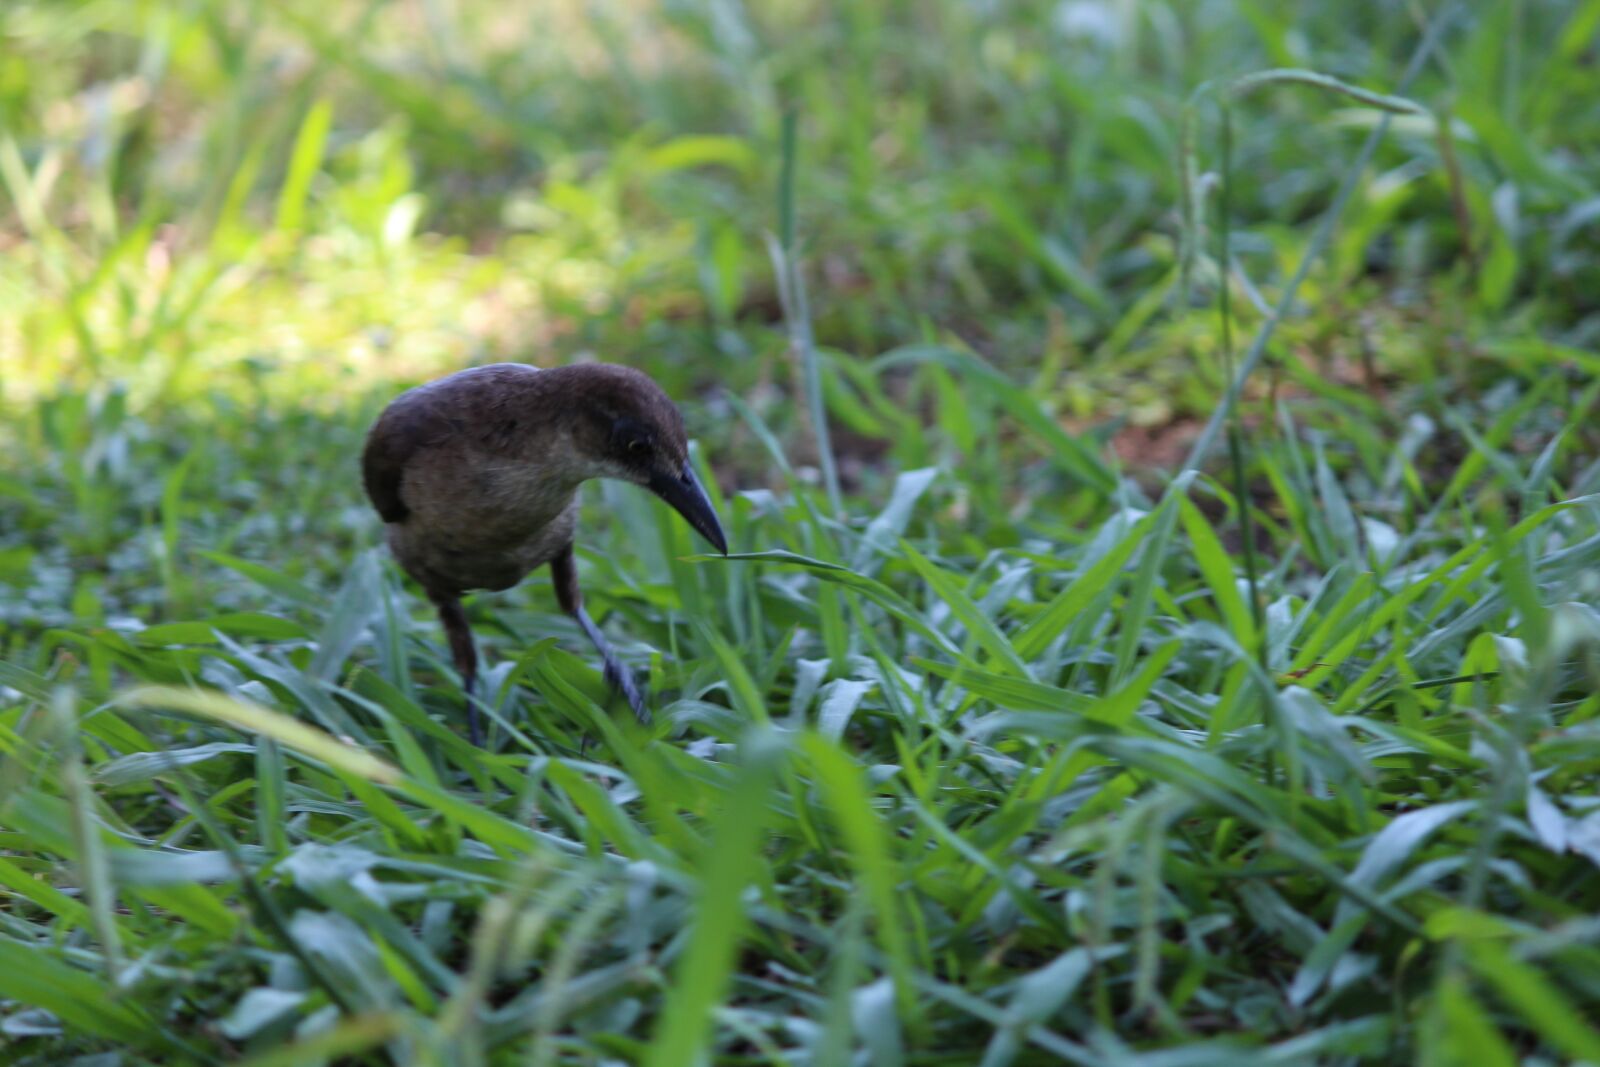 Canon EOS 1200D (EOS Rebel T5 / EOS Kiss X70 / EOS Hi) sample photo. Bird, eating, grass photography